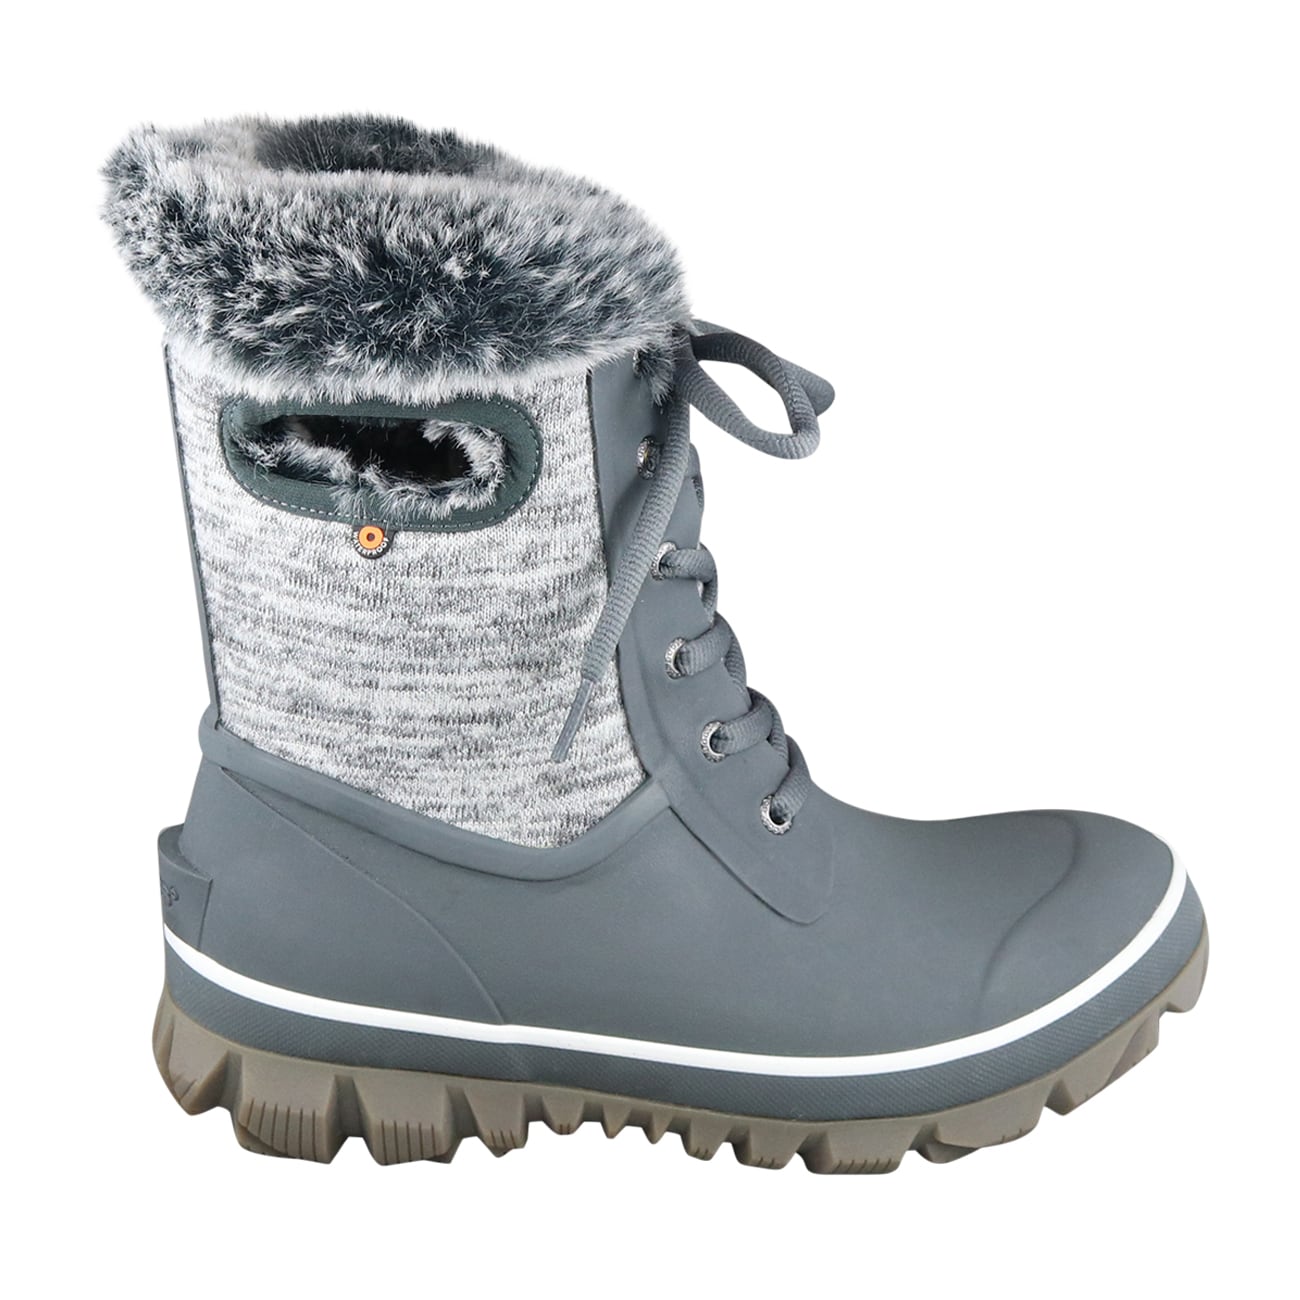 Bogs Women's Arcata Knit Waterproof Winter Boot | The Shoe Company